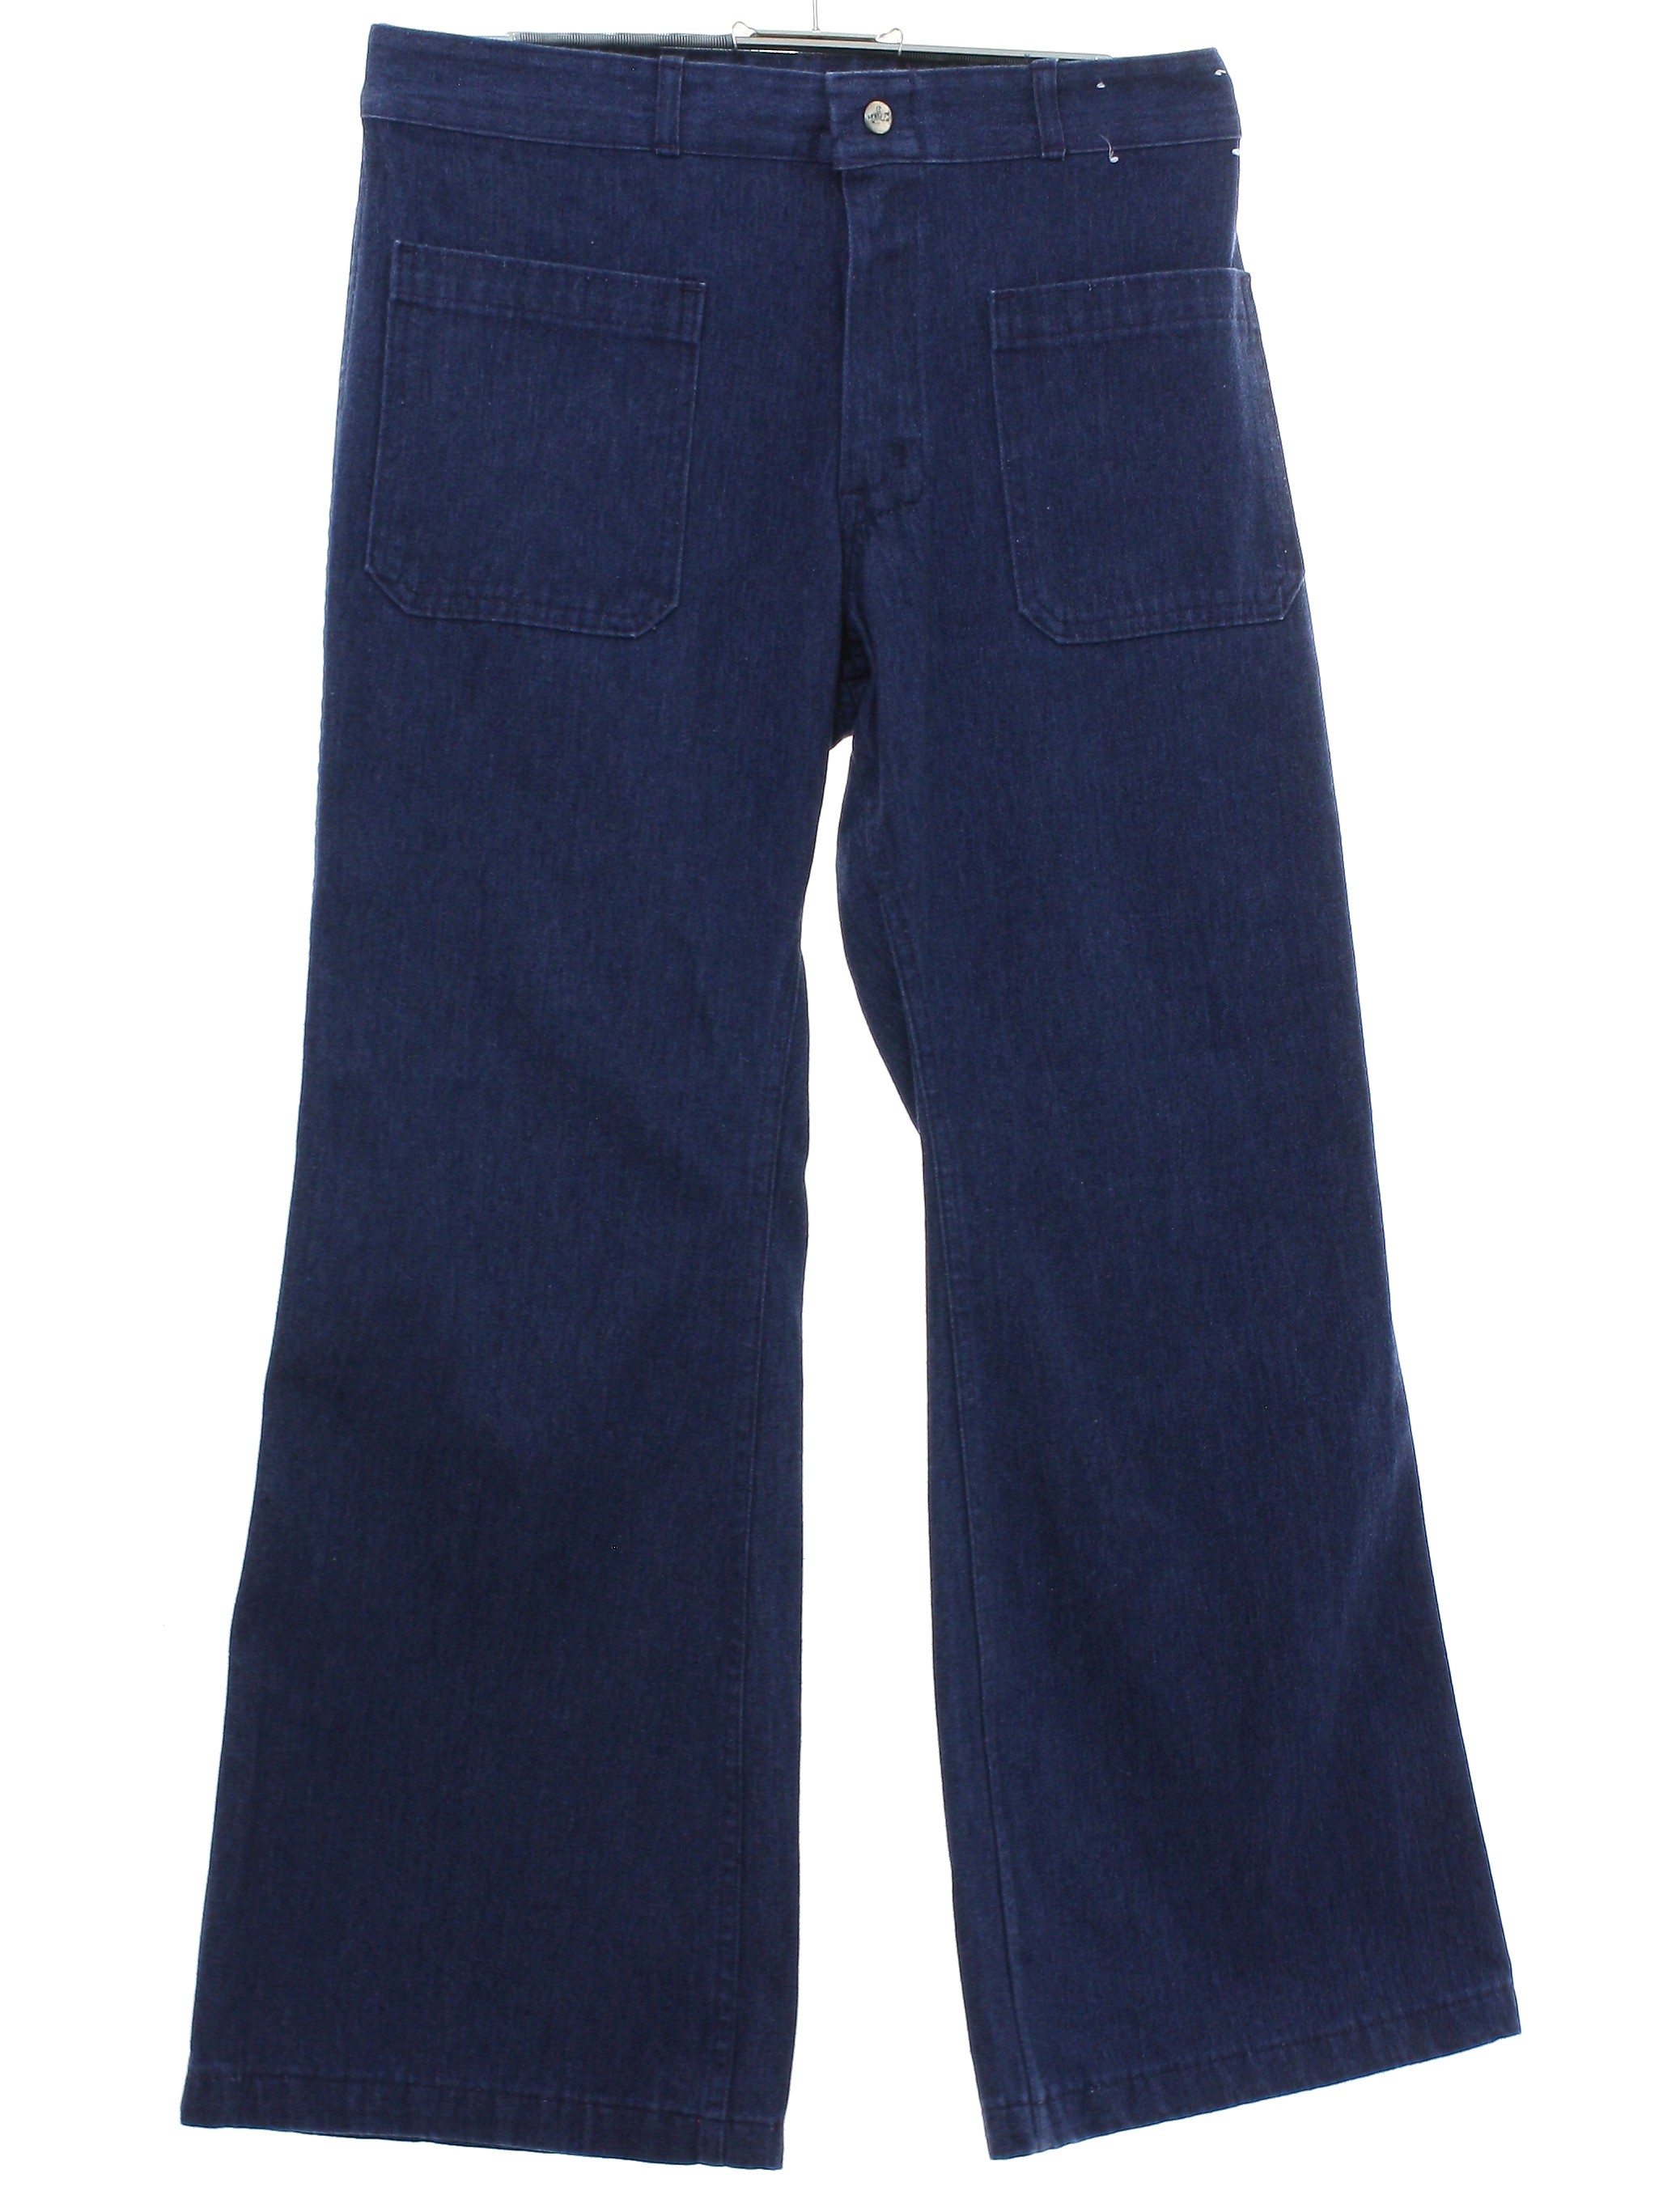 Seafarer 1970s Vintage Bellbottom Pants: 70s -Seafarer- Unisex blue ...